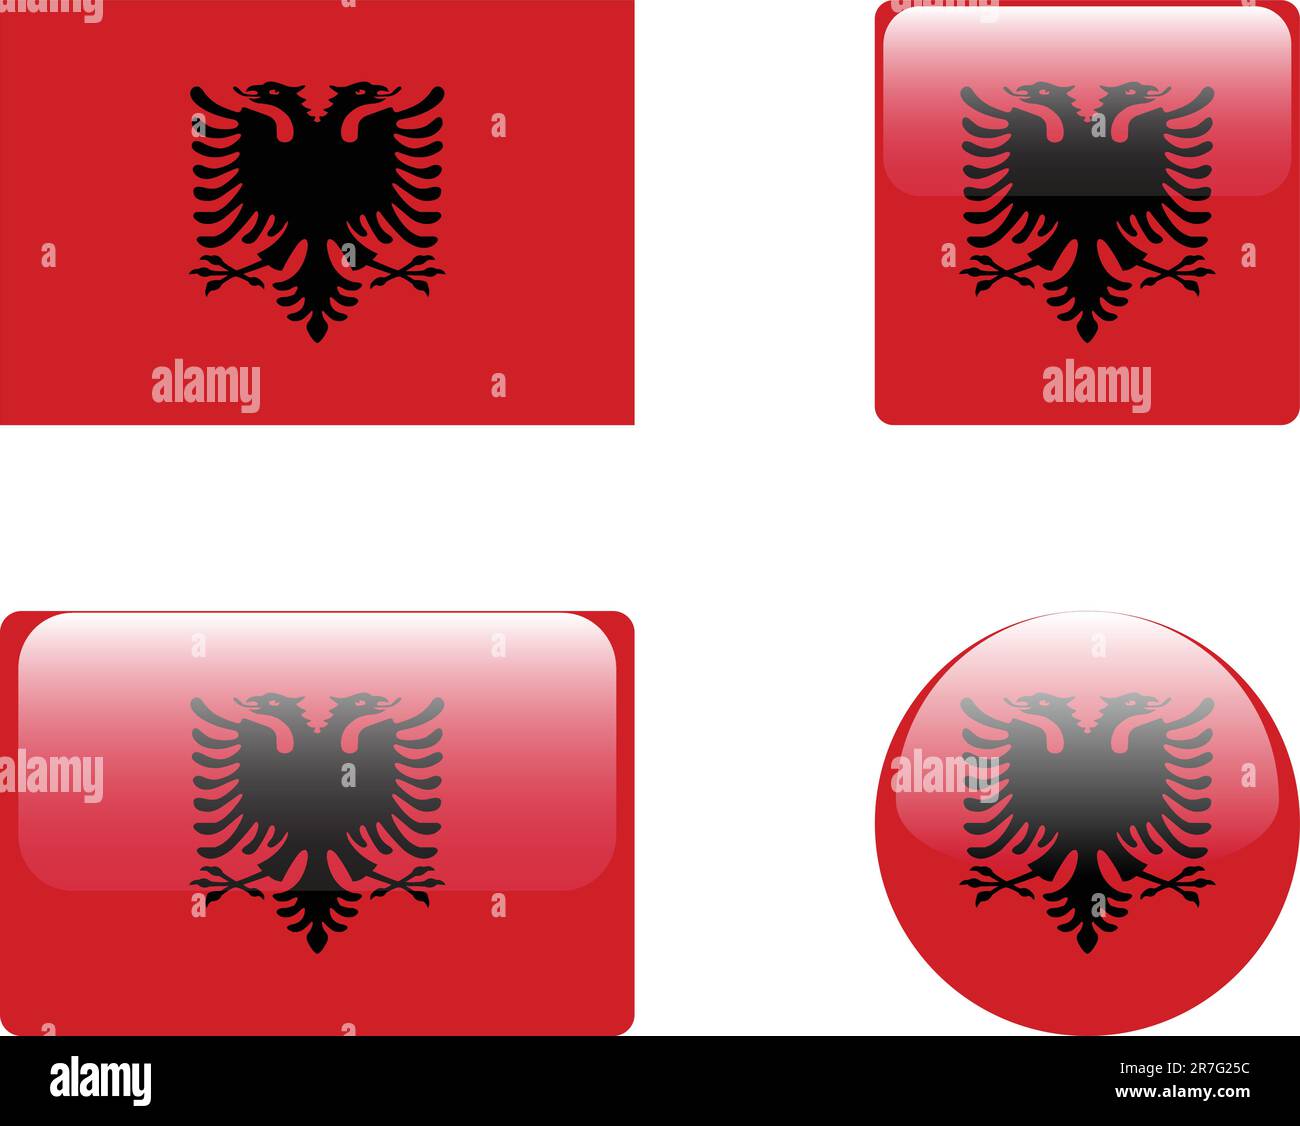 collection drapeau et boutons albanie - vecteur Illustration de Vecteur